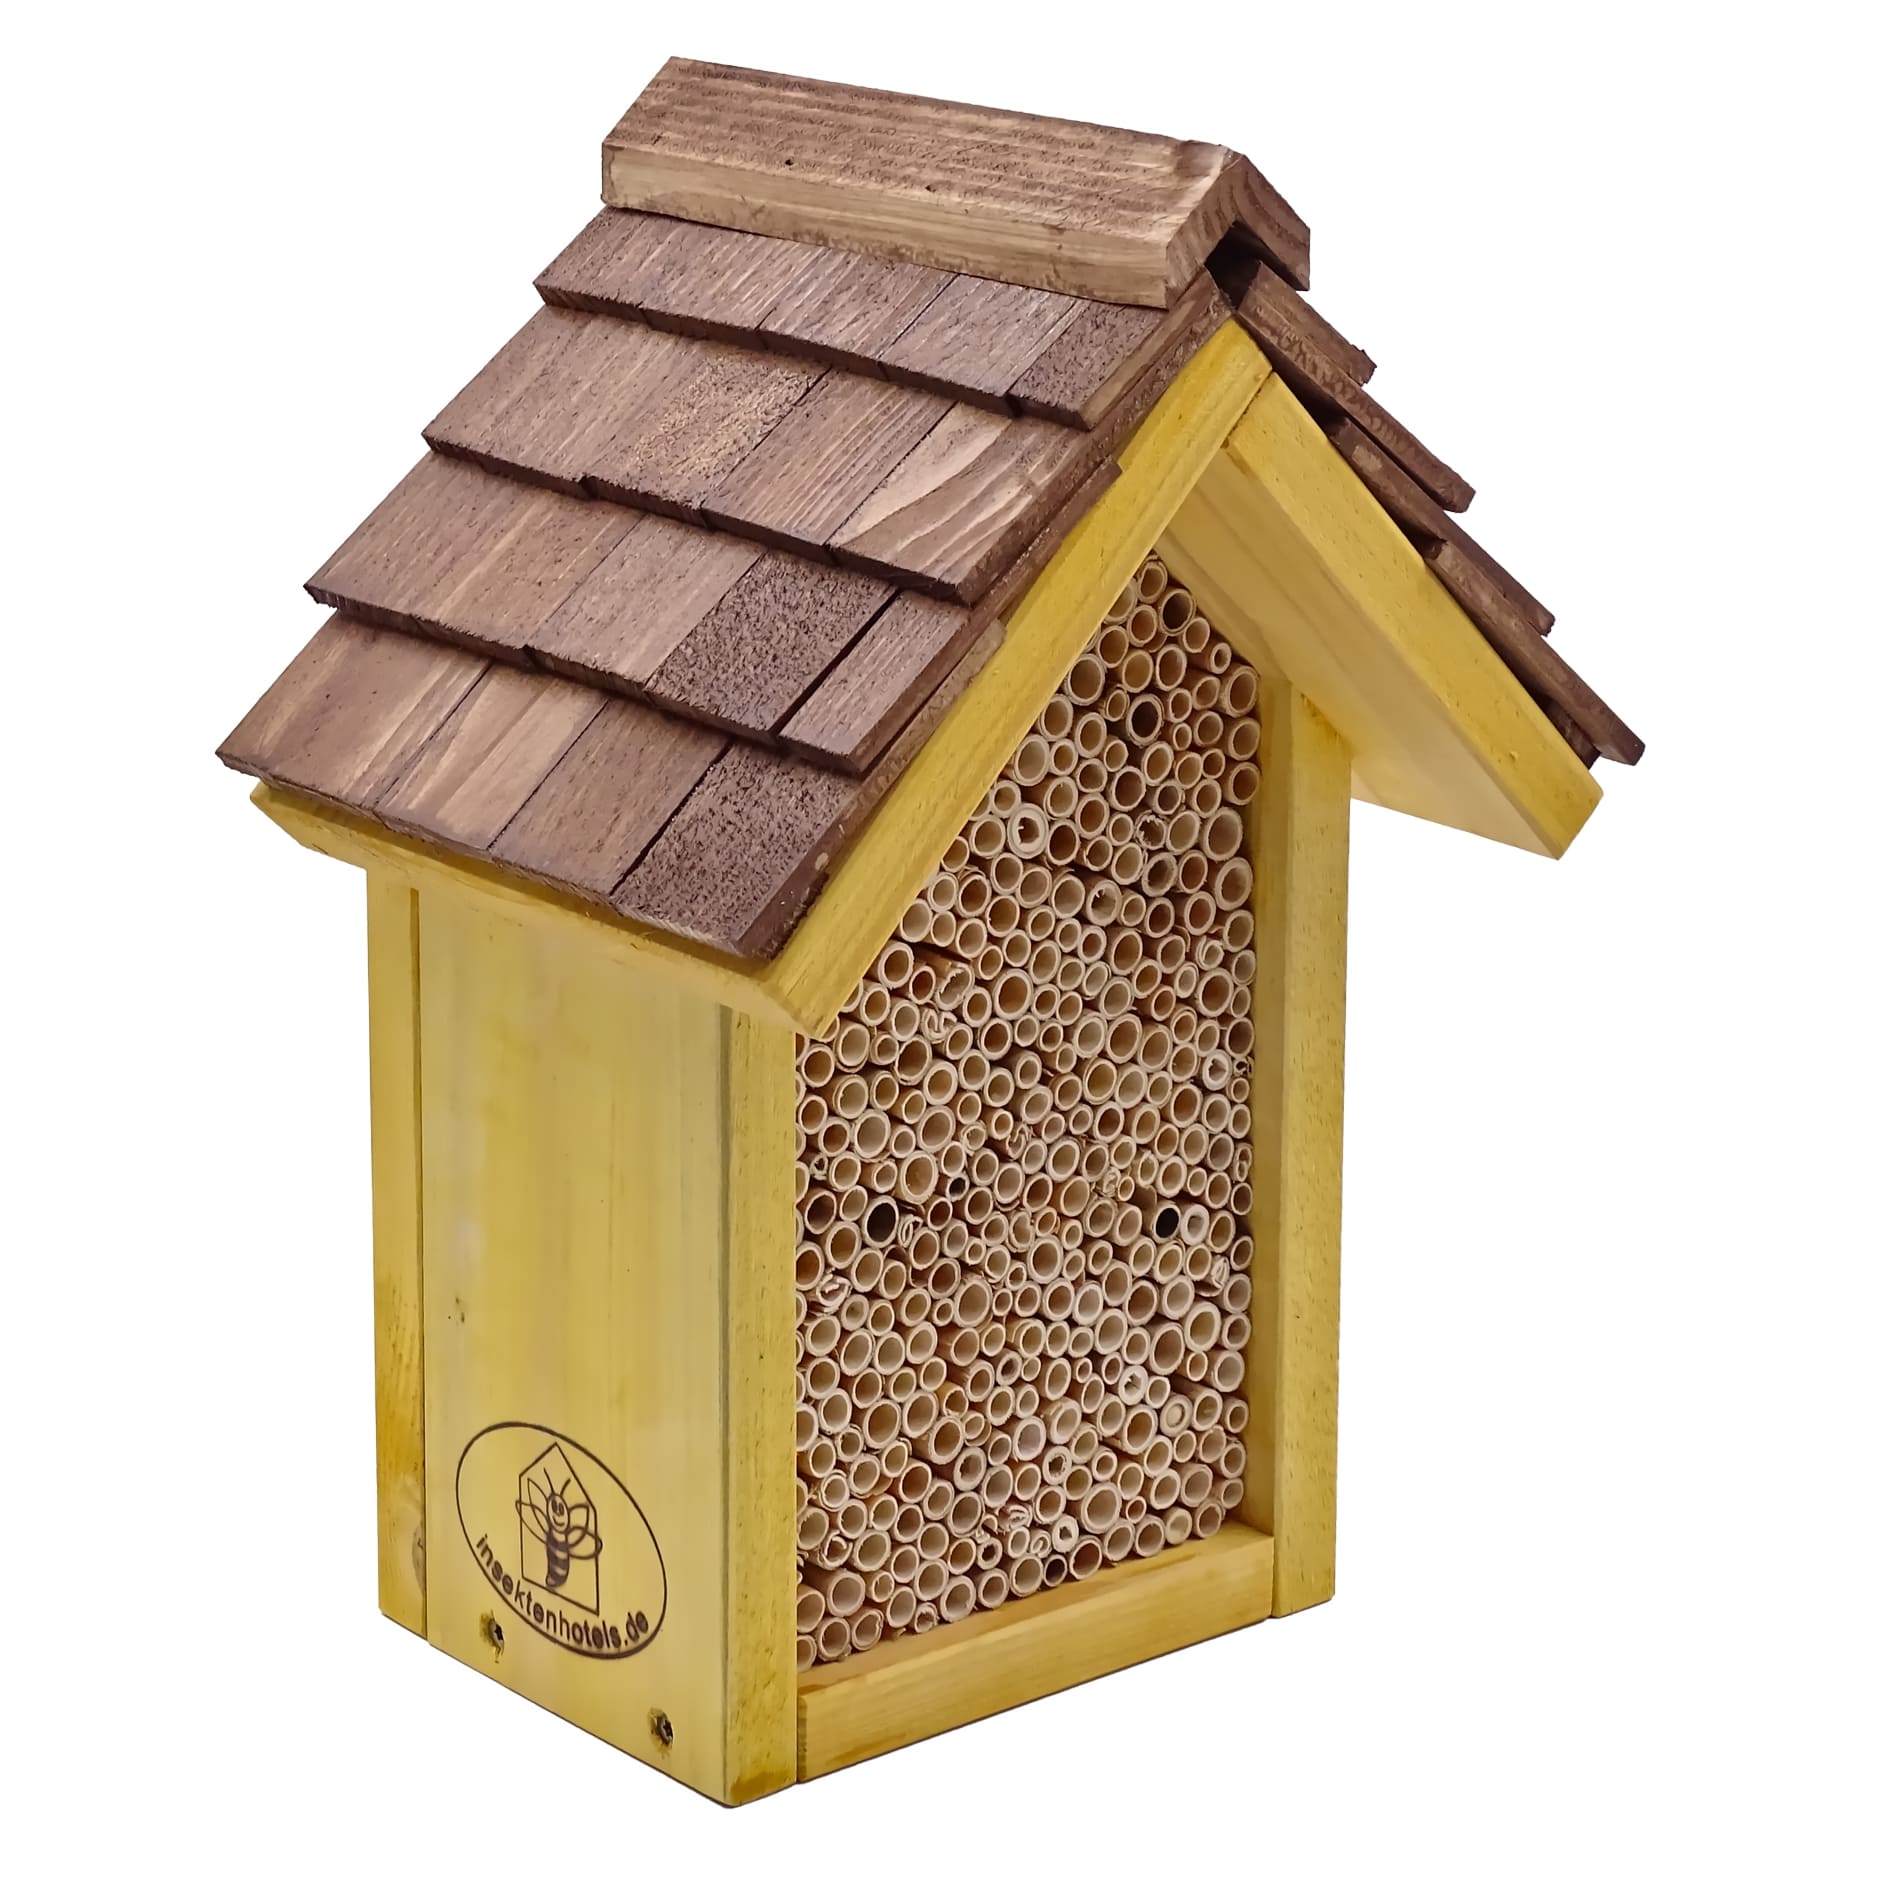 Insektenhotel zur Mini-Bienenkönigin in Fichte